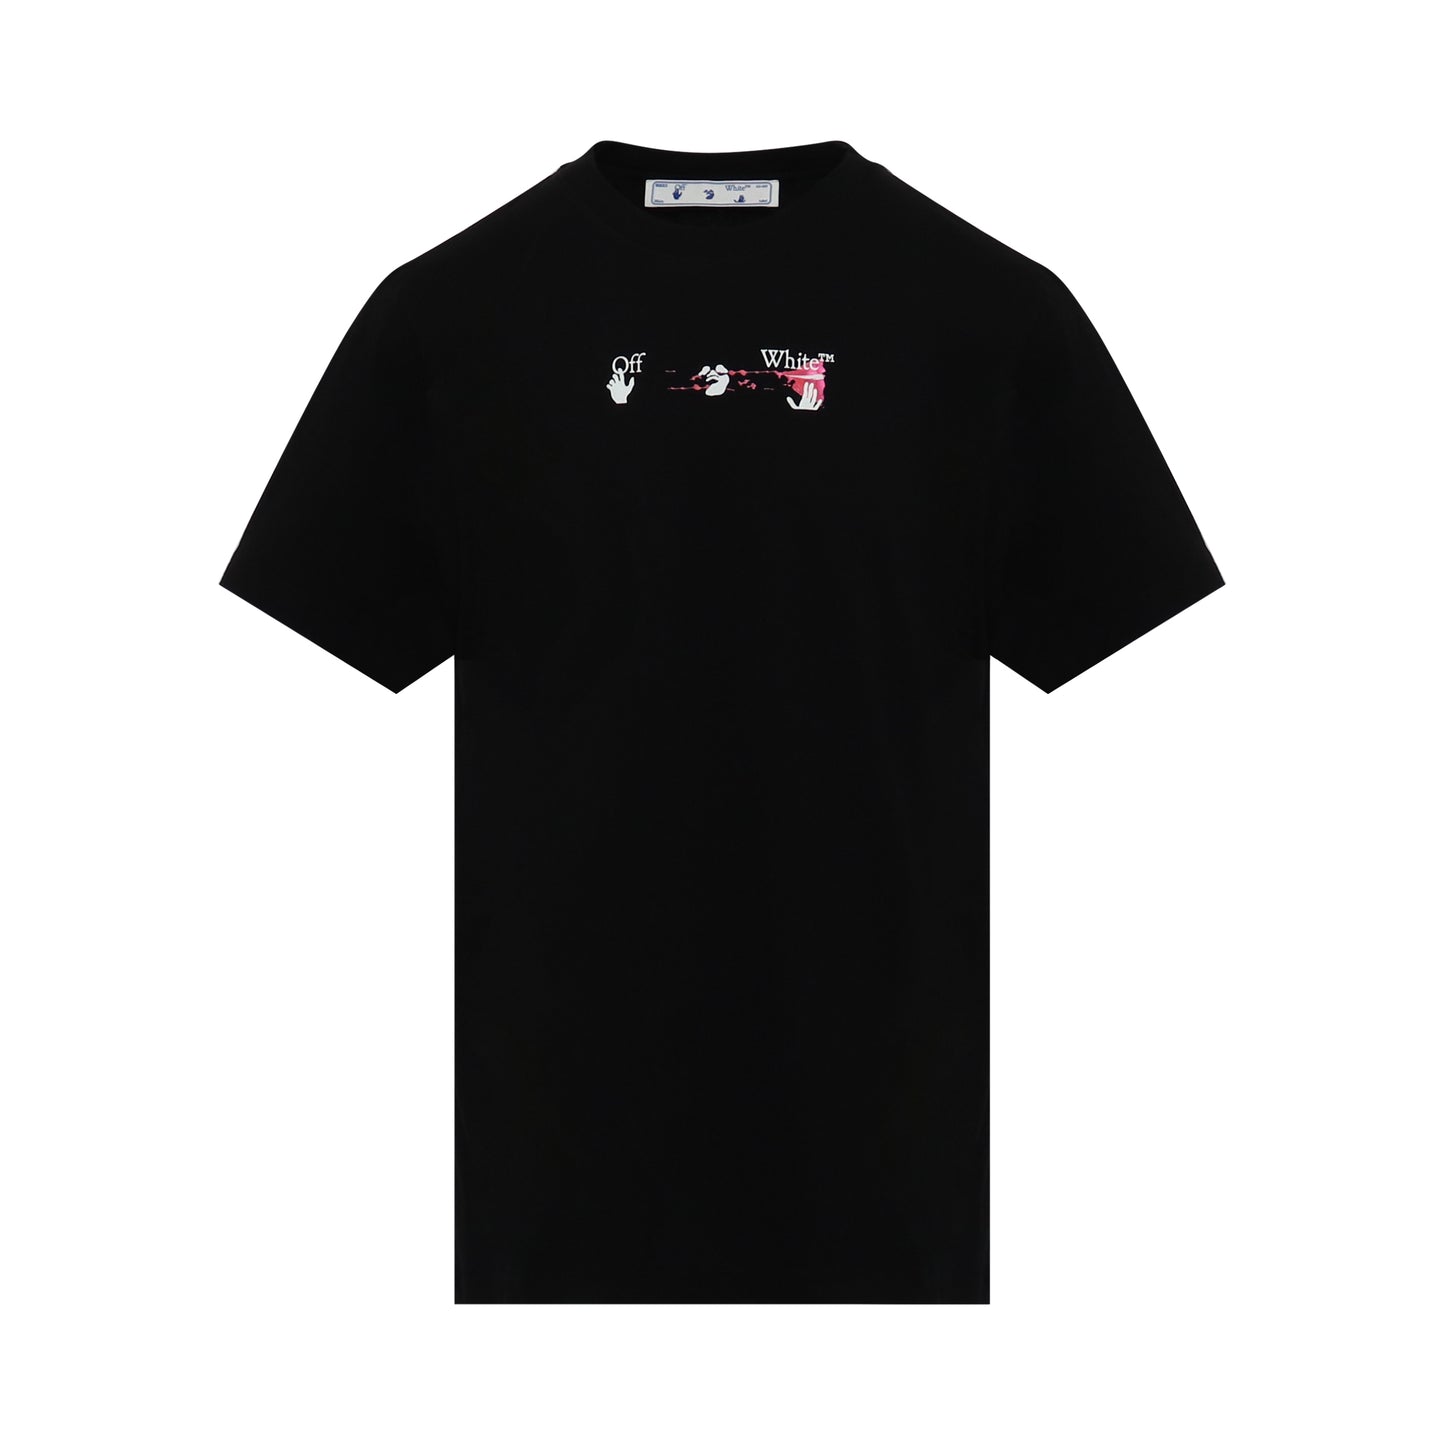 Acrylic Arrow Slim Fit T-Shirt in Black/Fuchsia